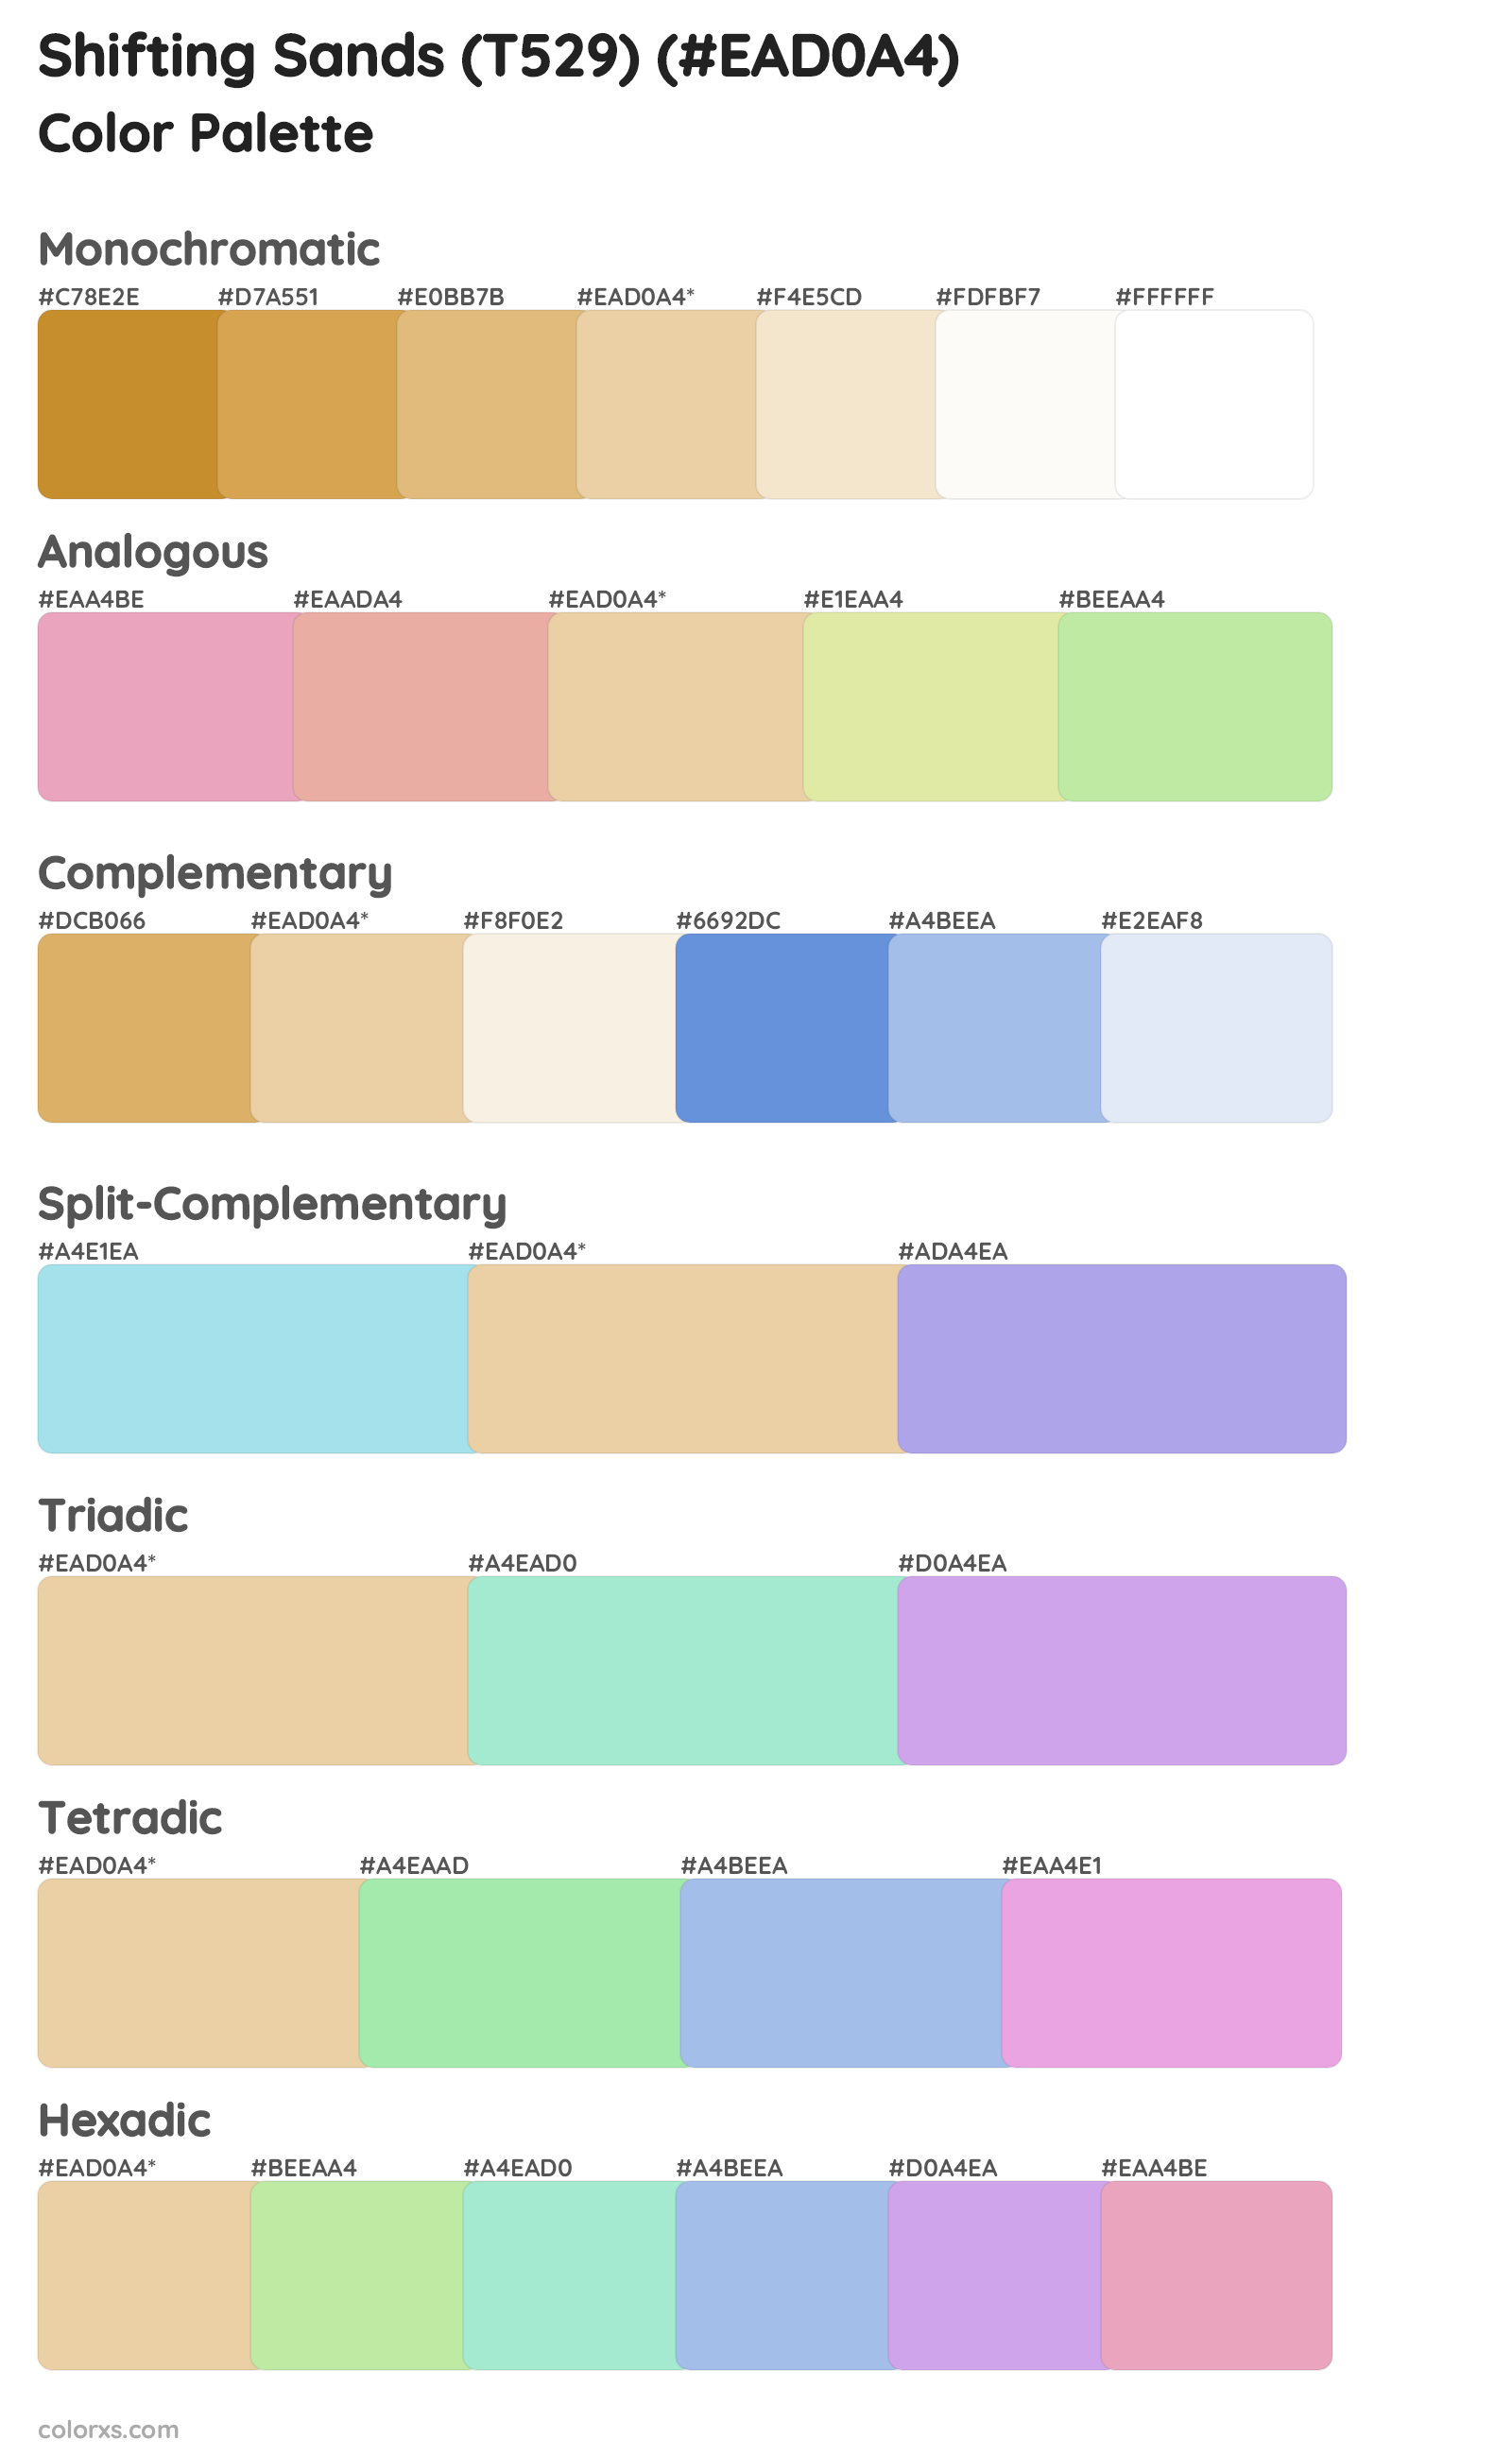 Shifting Sands (T529) Color Scheme Palettes